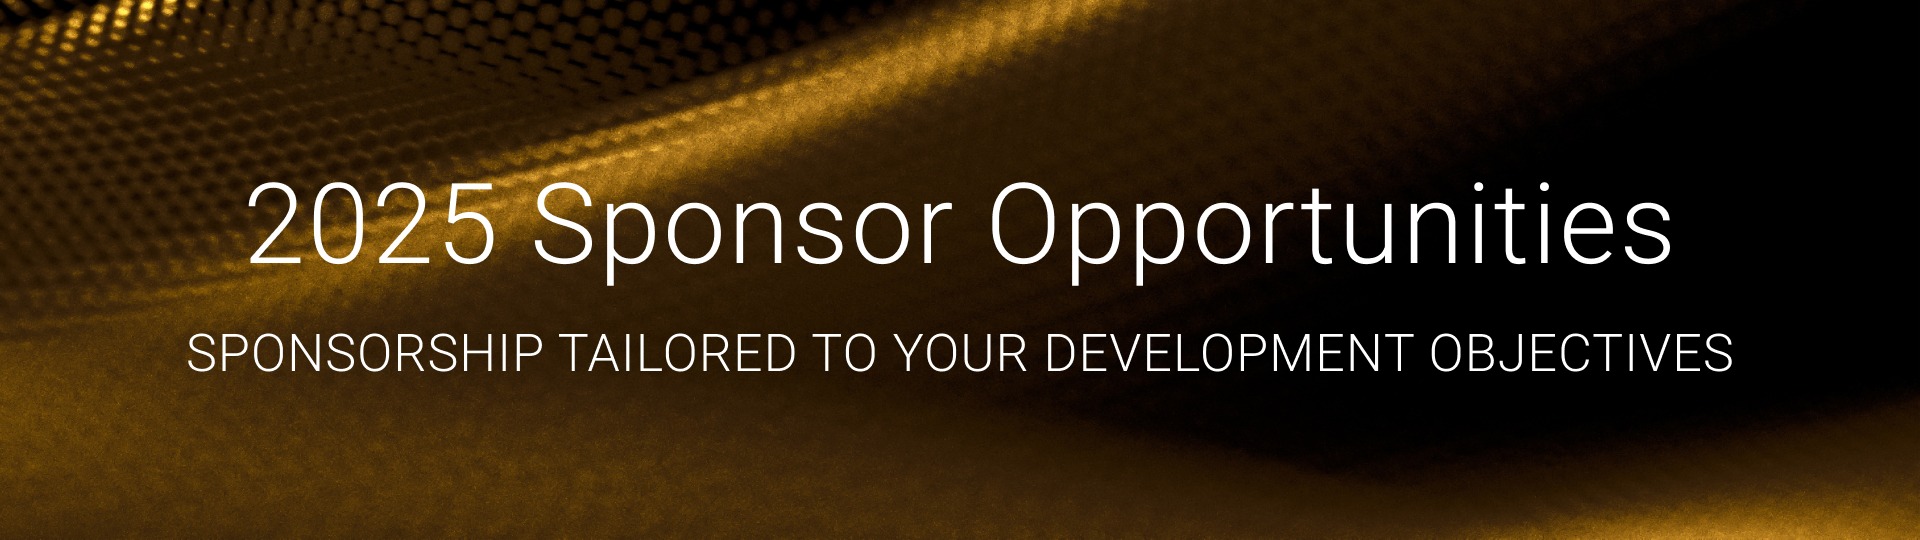 Sponsor Opportunities web-banner